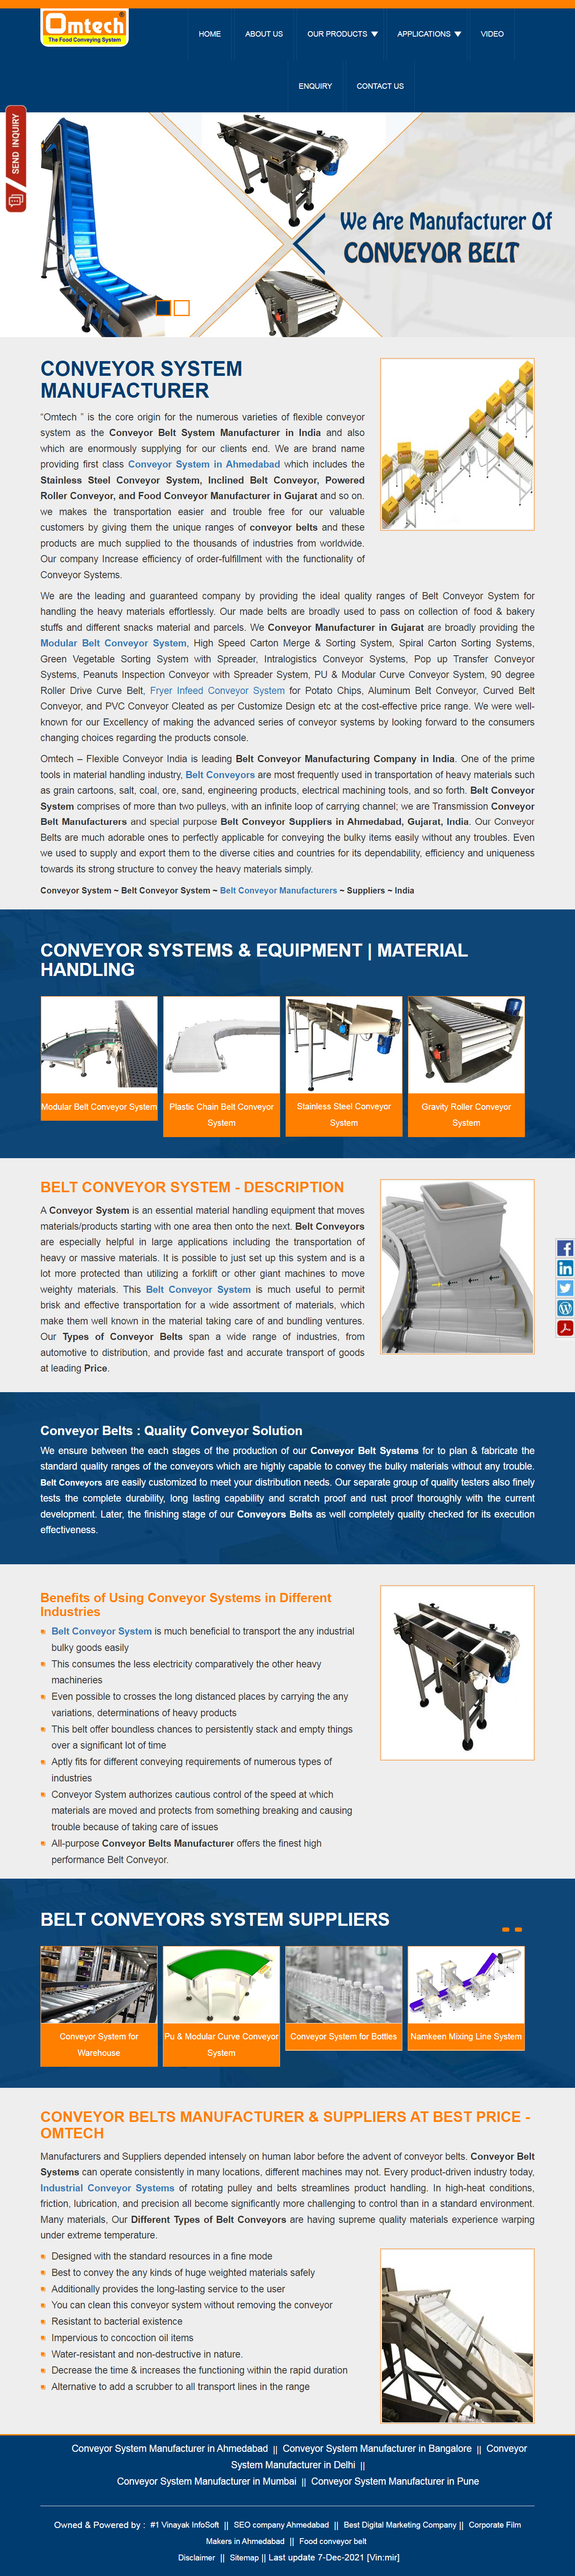 Conveyor Belts Manufacturer